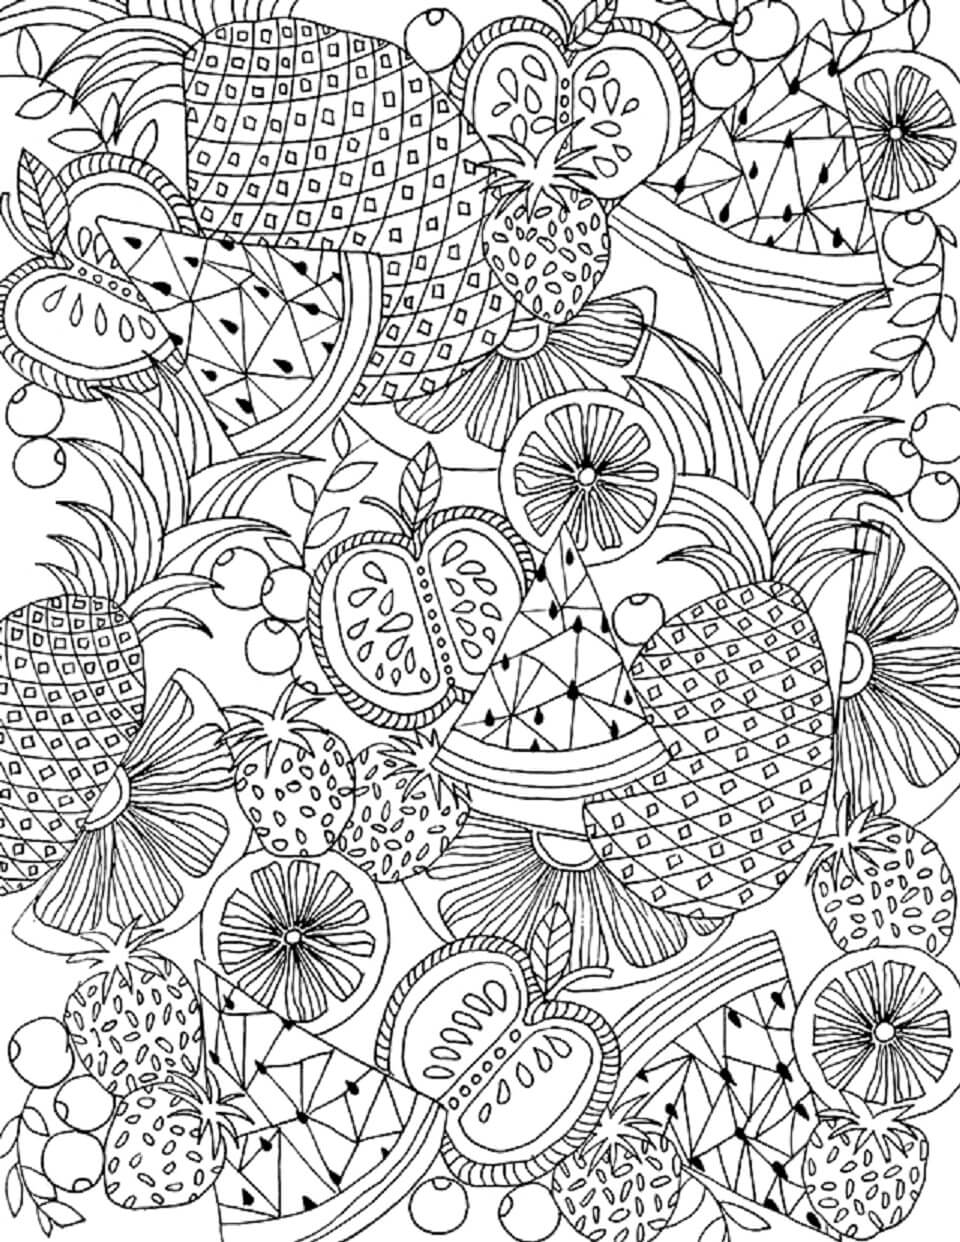 Mandala Fruits in Summer Coloring Page – Sheet 1 Mandala